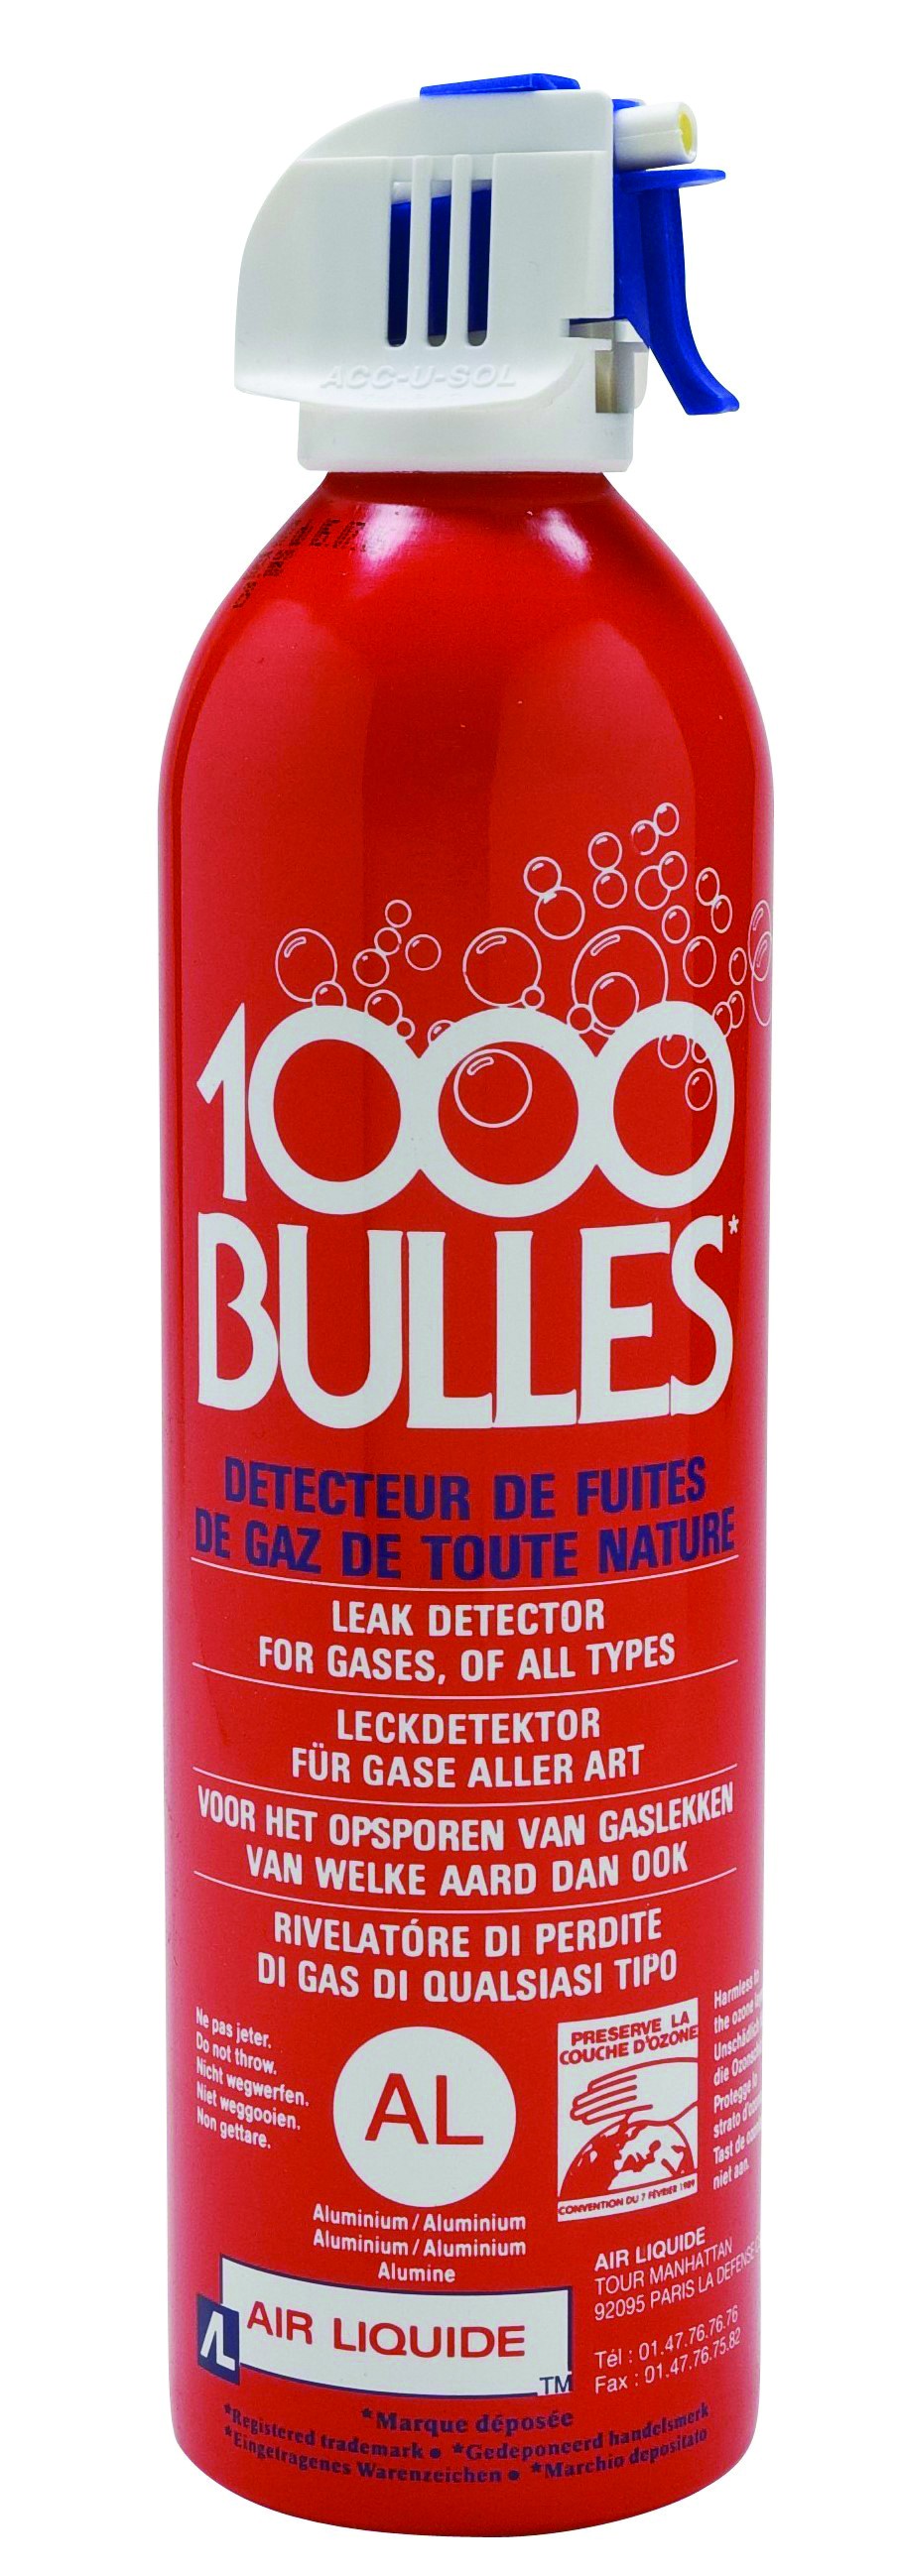 Détecteur 1000 bulles-01